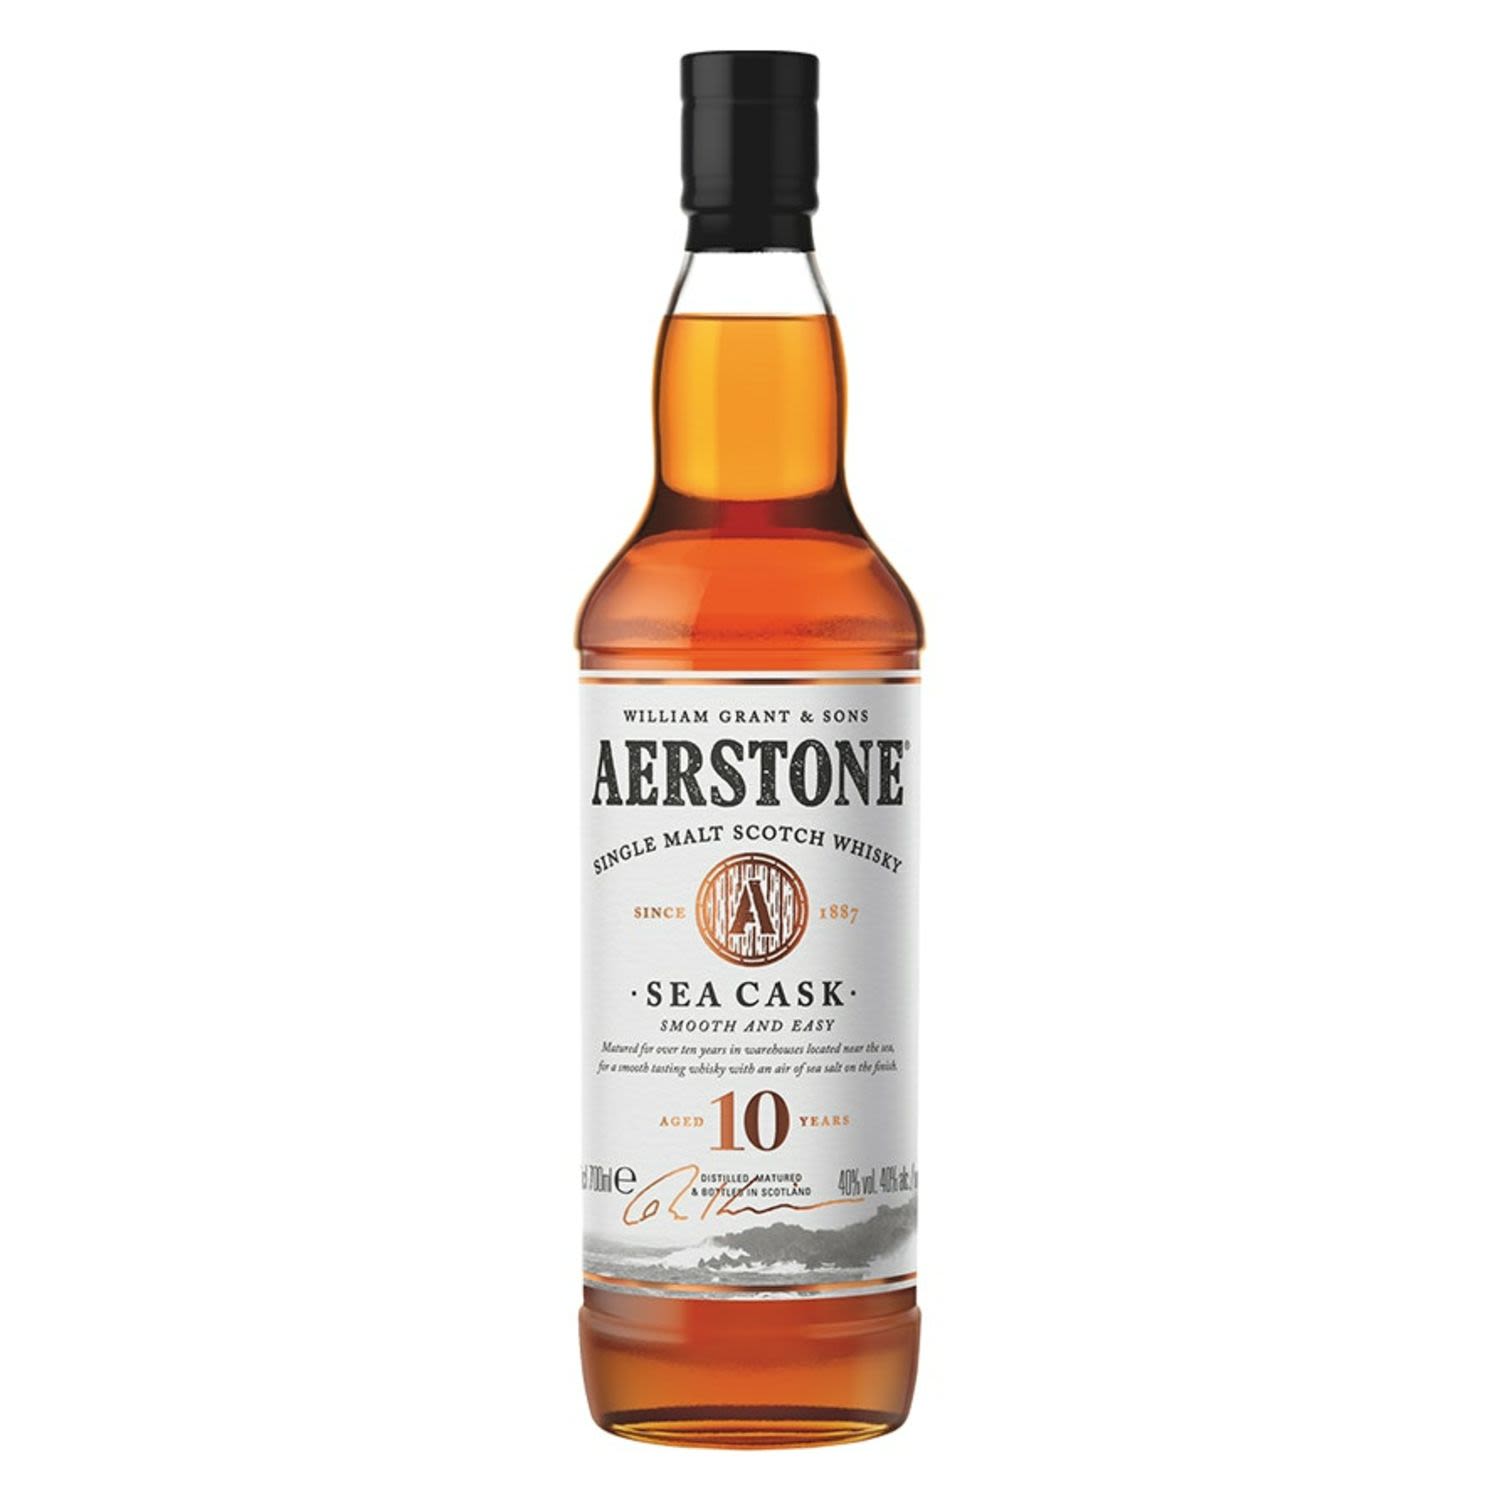 Aerstone Sea Cask 10 Year Old Single Malt Scotch Whisky 700mL Bottle